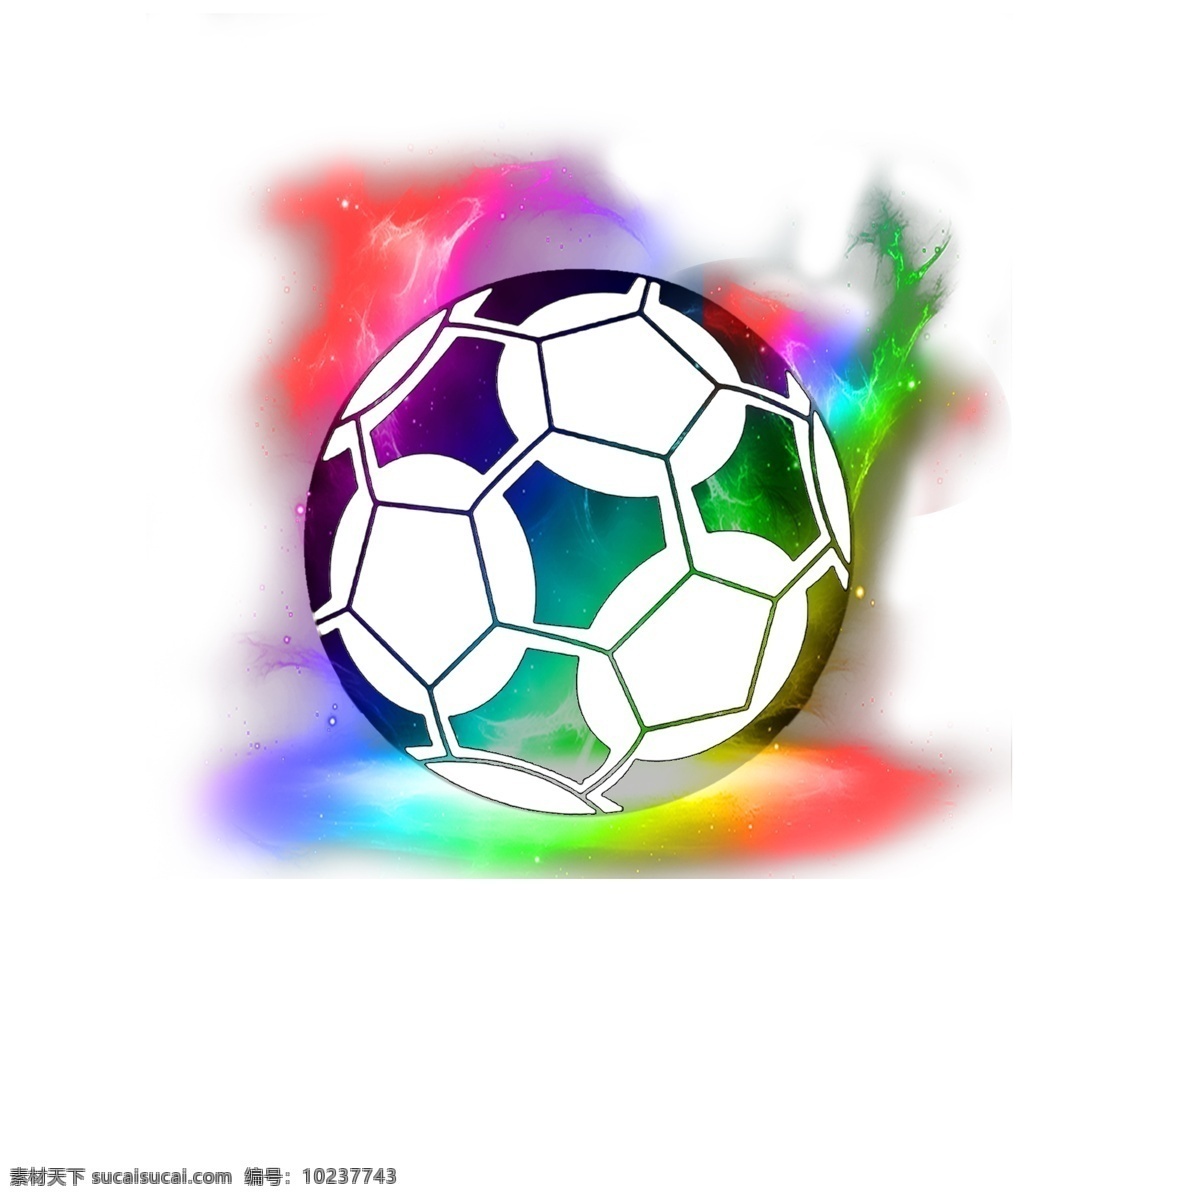 炫 酷 世界杯 足球 光效 红色 渐变 体育运动 体育比赛 足球比赛 炫彩的世界杯 炫彩足球 炫酷世界杯 世界杯设计